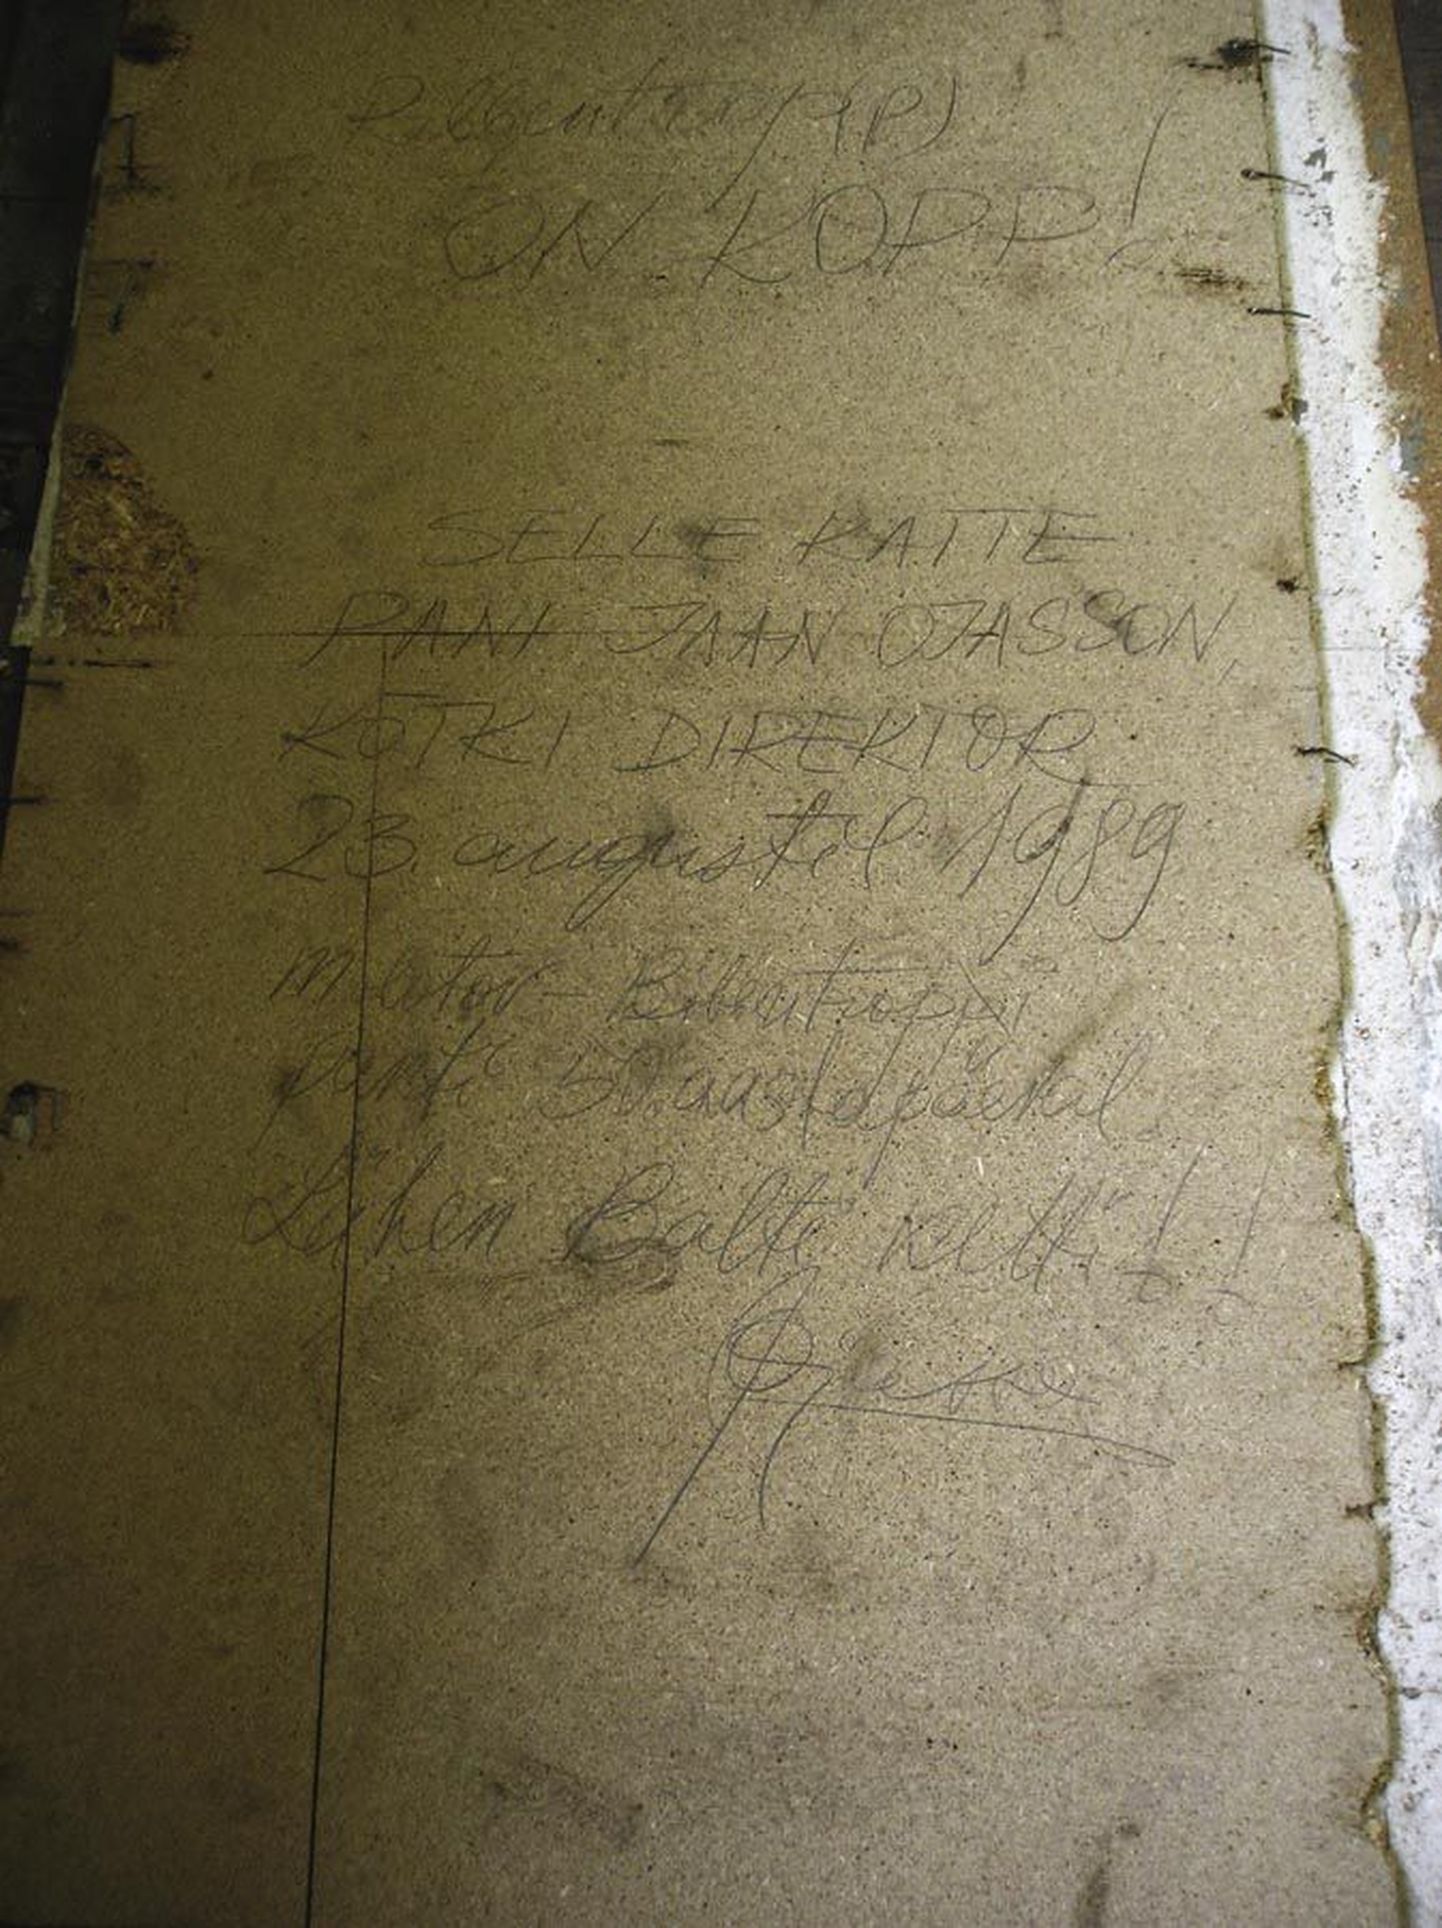 Vanade põrandate avamisel on ennegi tulnud välja sõnumeid minevikust. Jaan Ojassoni oma ootas veerand sajandit.